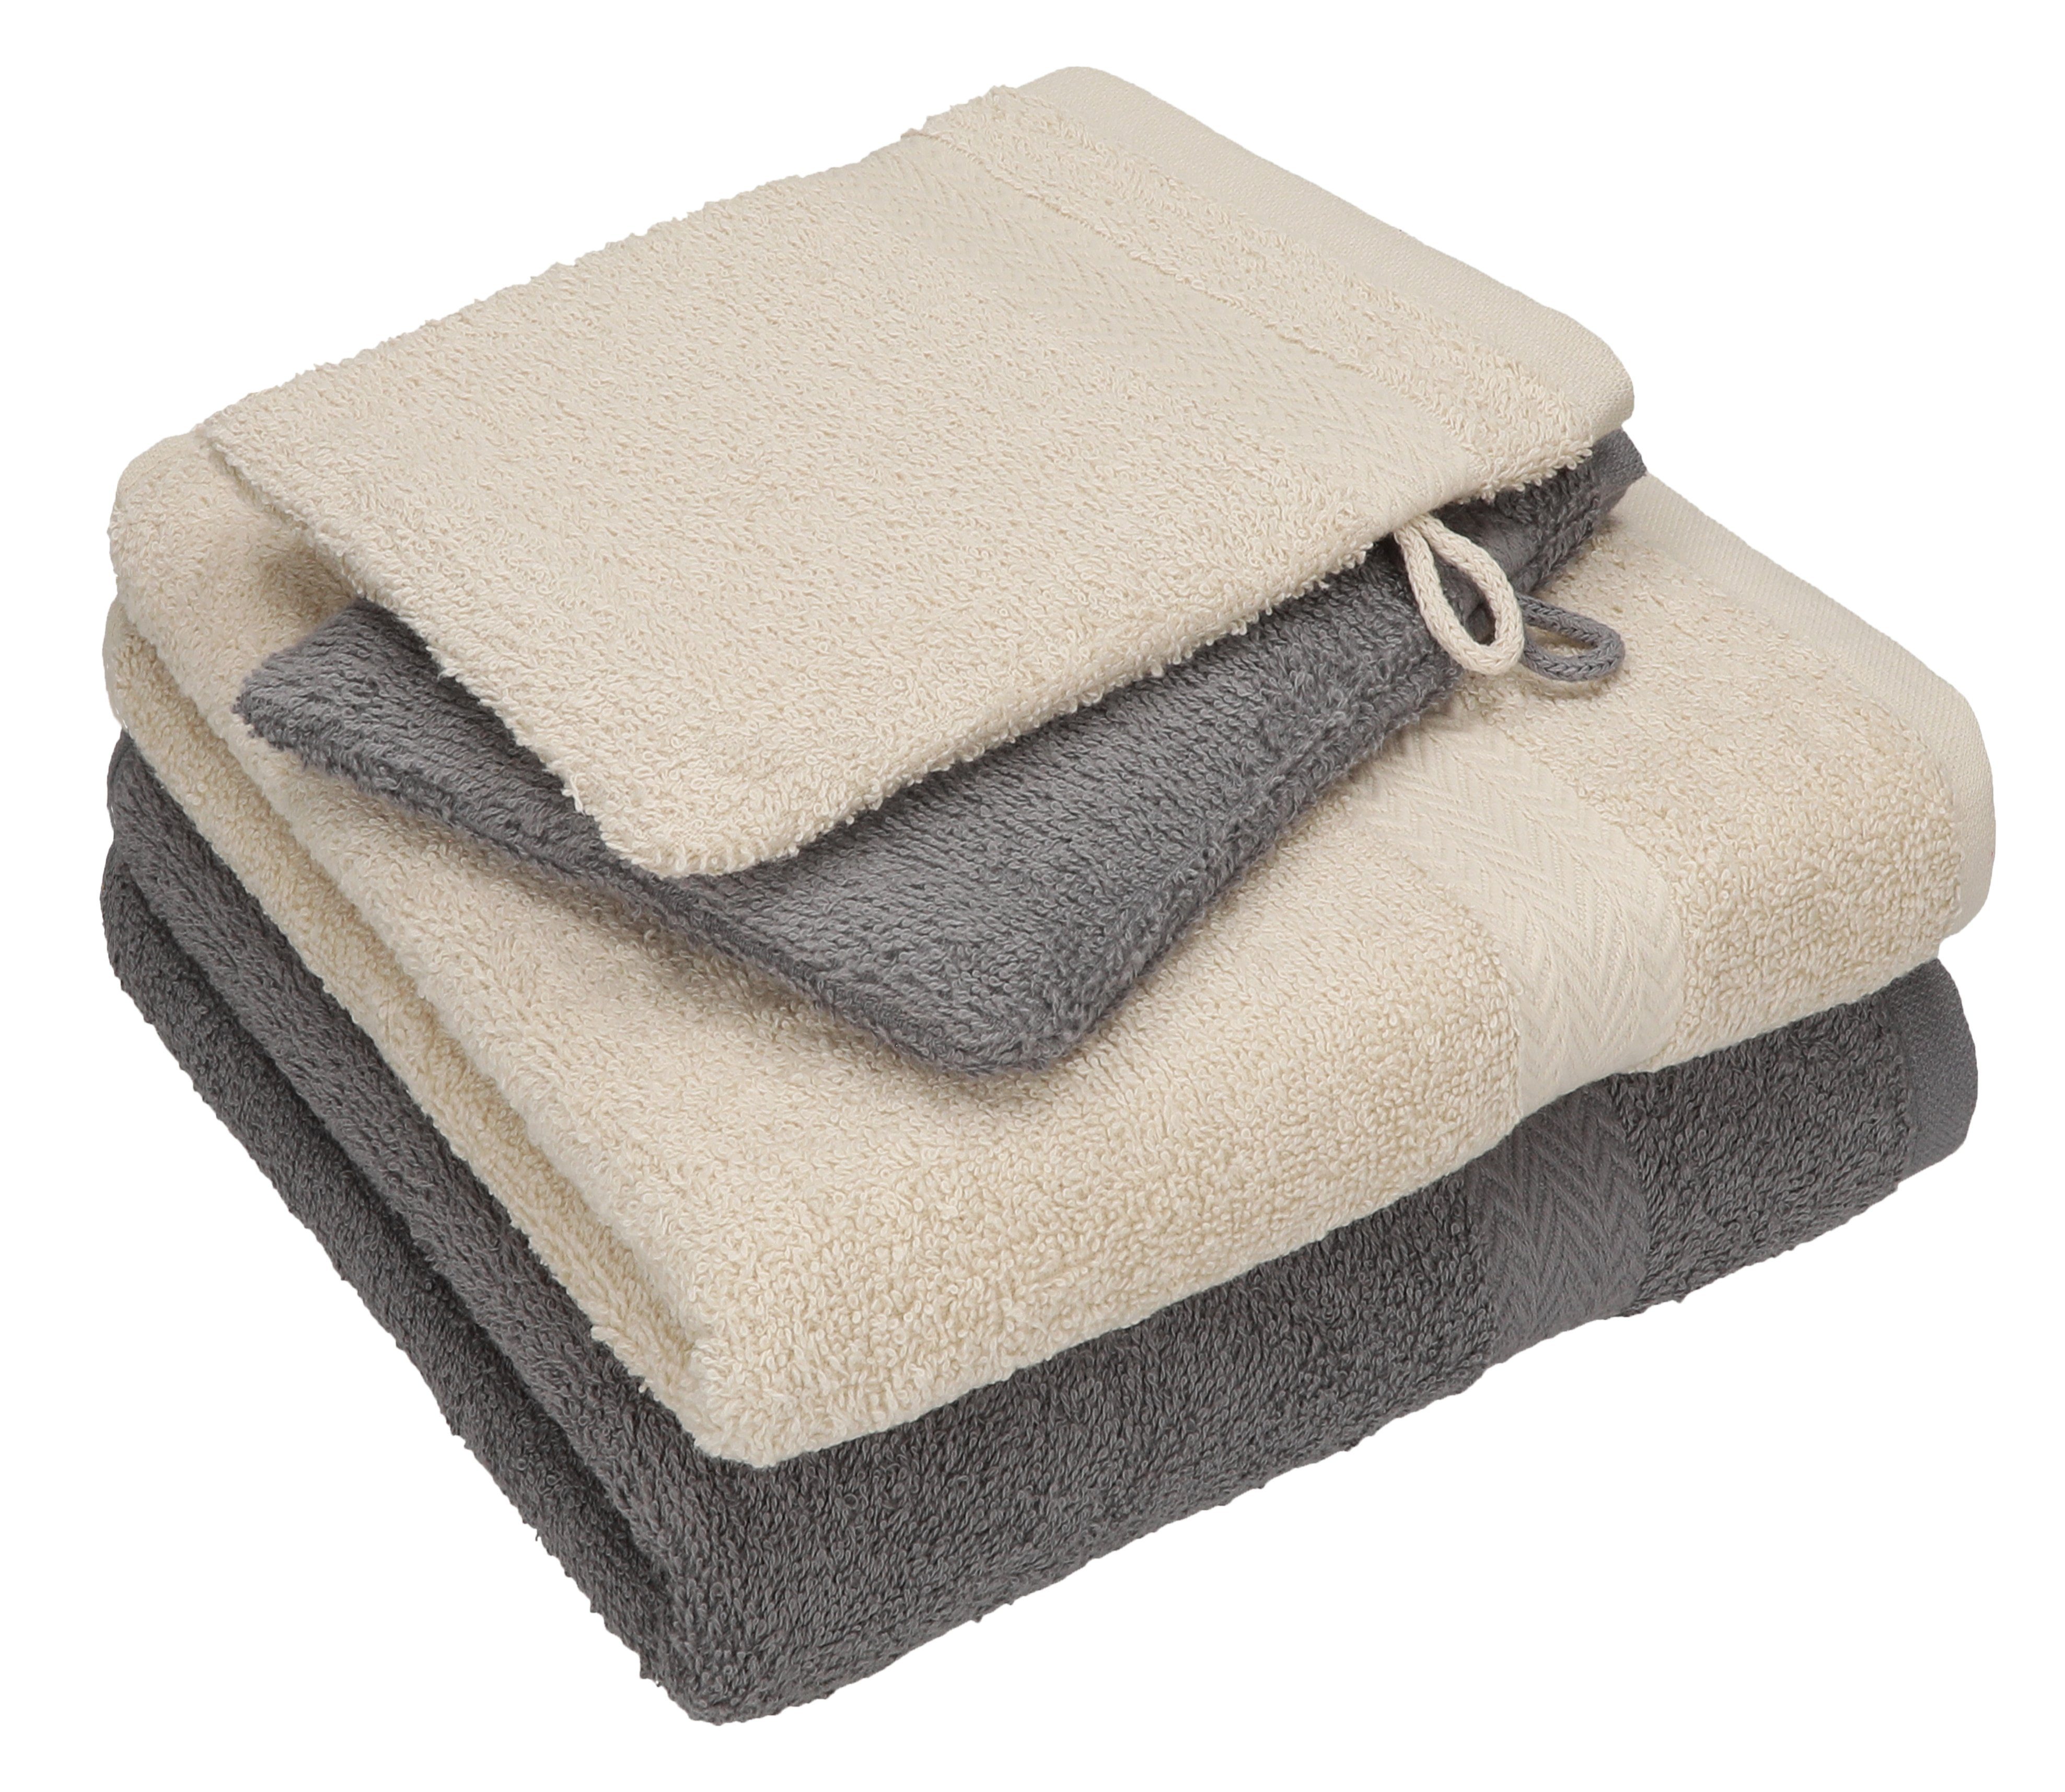 Betz Handtuch Set 4 TLG. Handtuch Set Happy Pack 100% Baumwolle 2 Handtücher 2 Waschhandschuhe, 100% Baumwolle anthrazit grau - sand